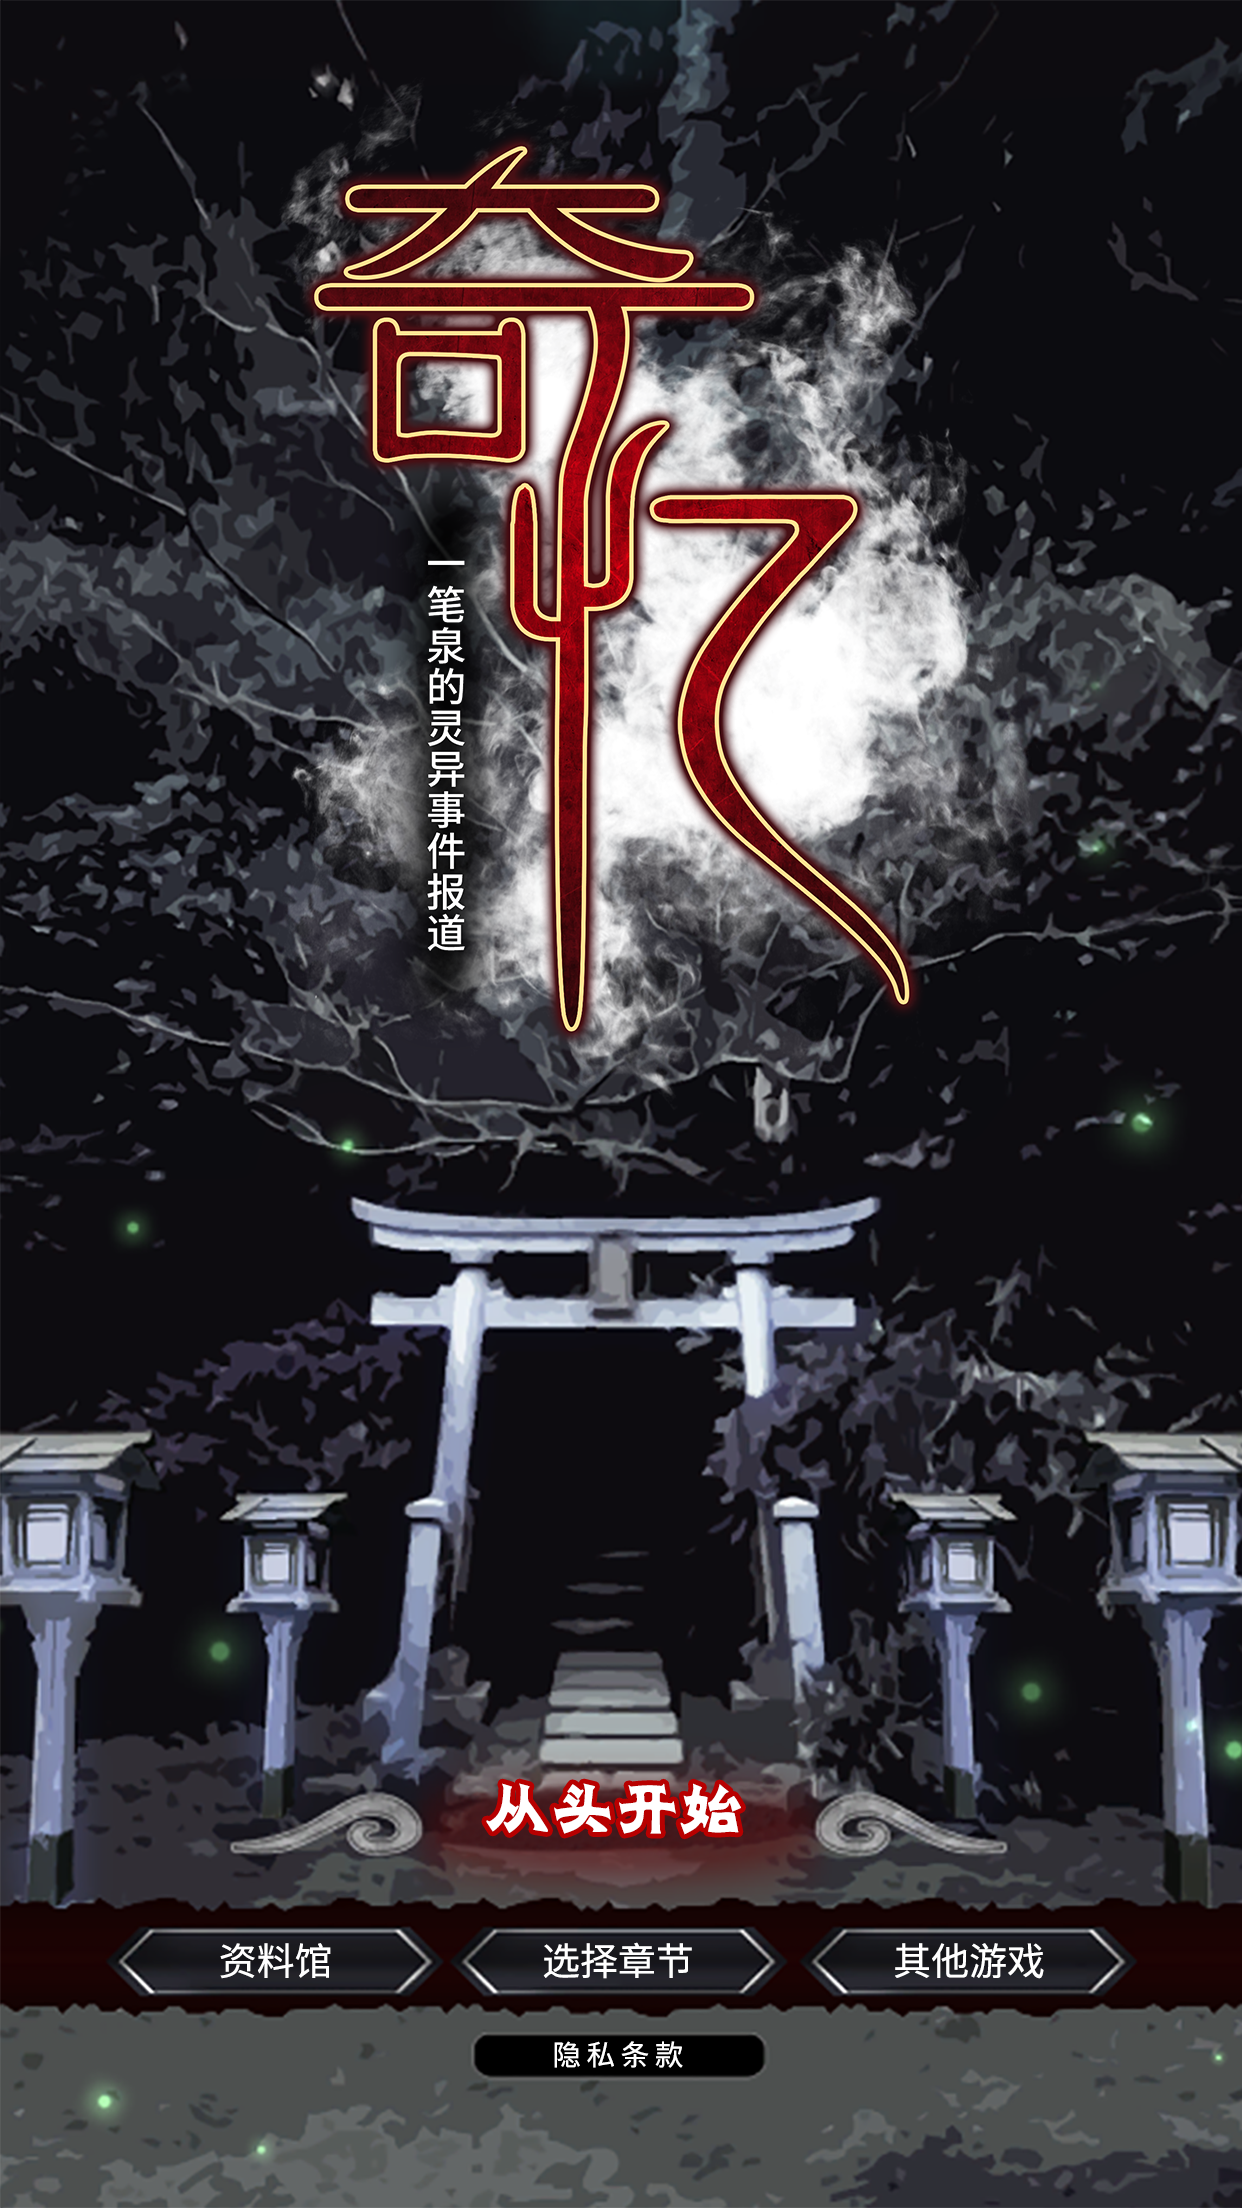 Screenshot 1 of Strange Memories: Un reportaje sobre el evento sobrenatural de Yiyiquan 